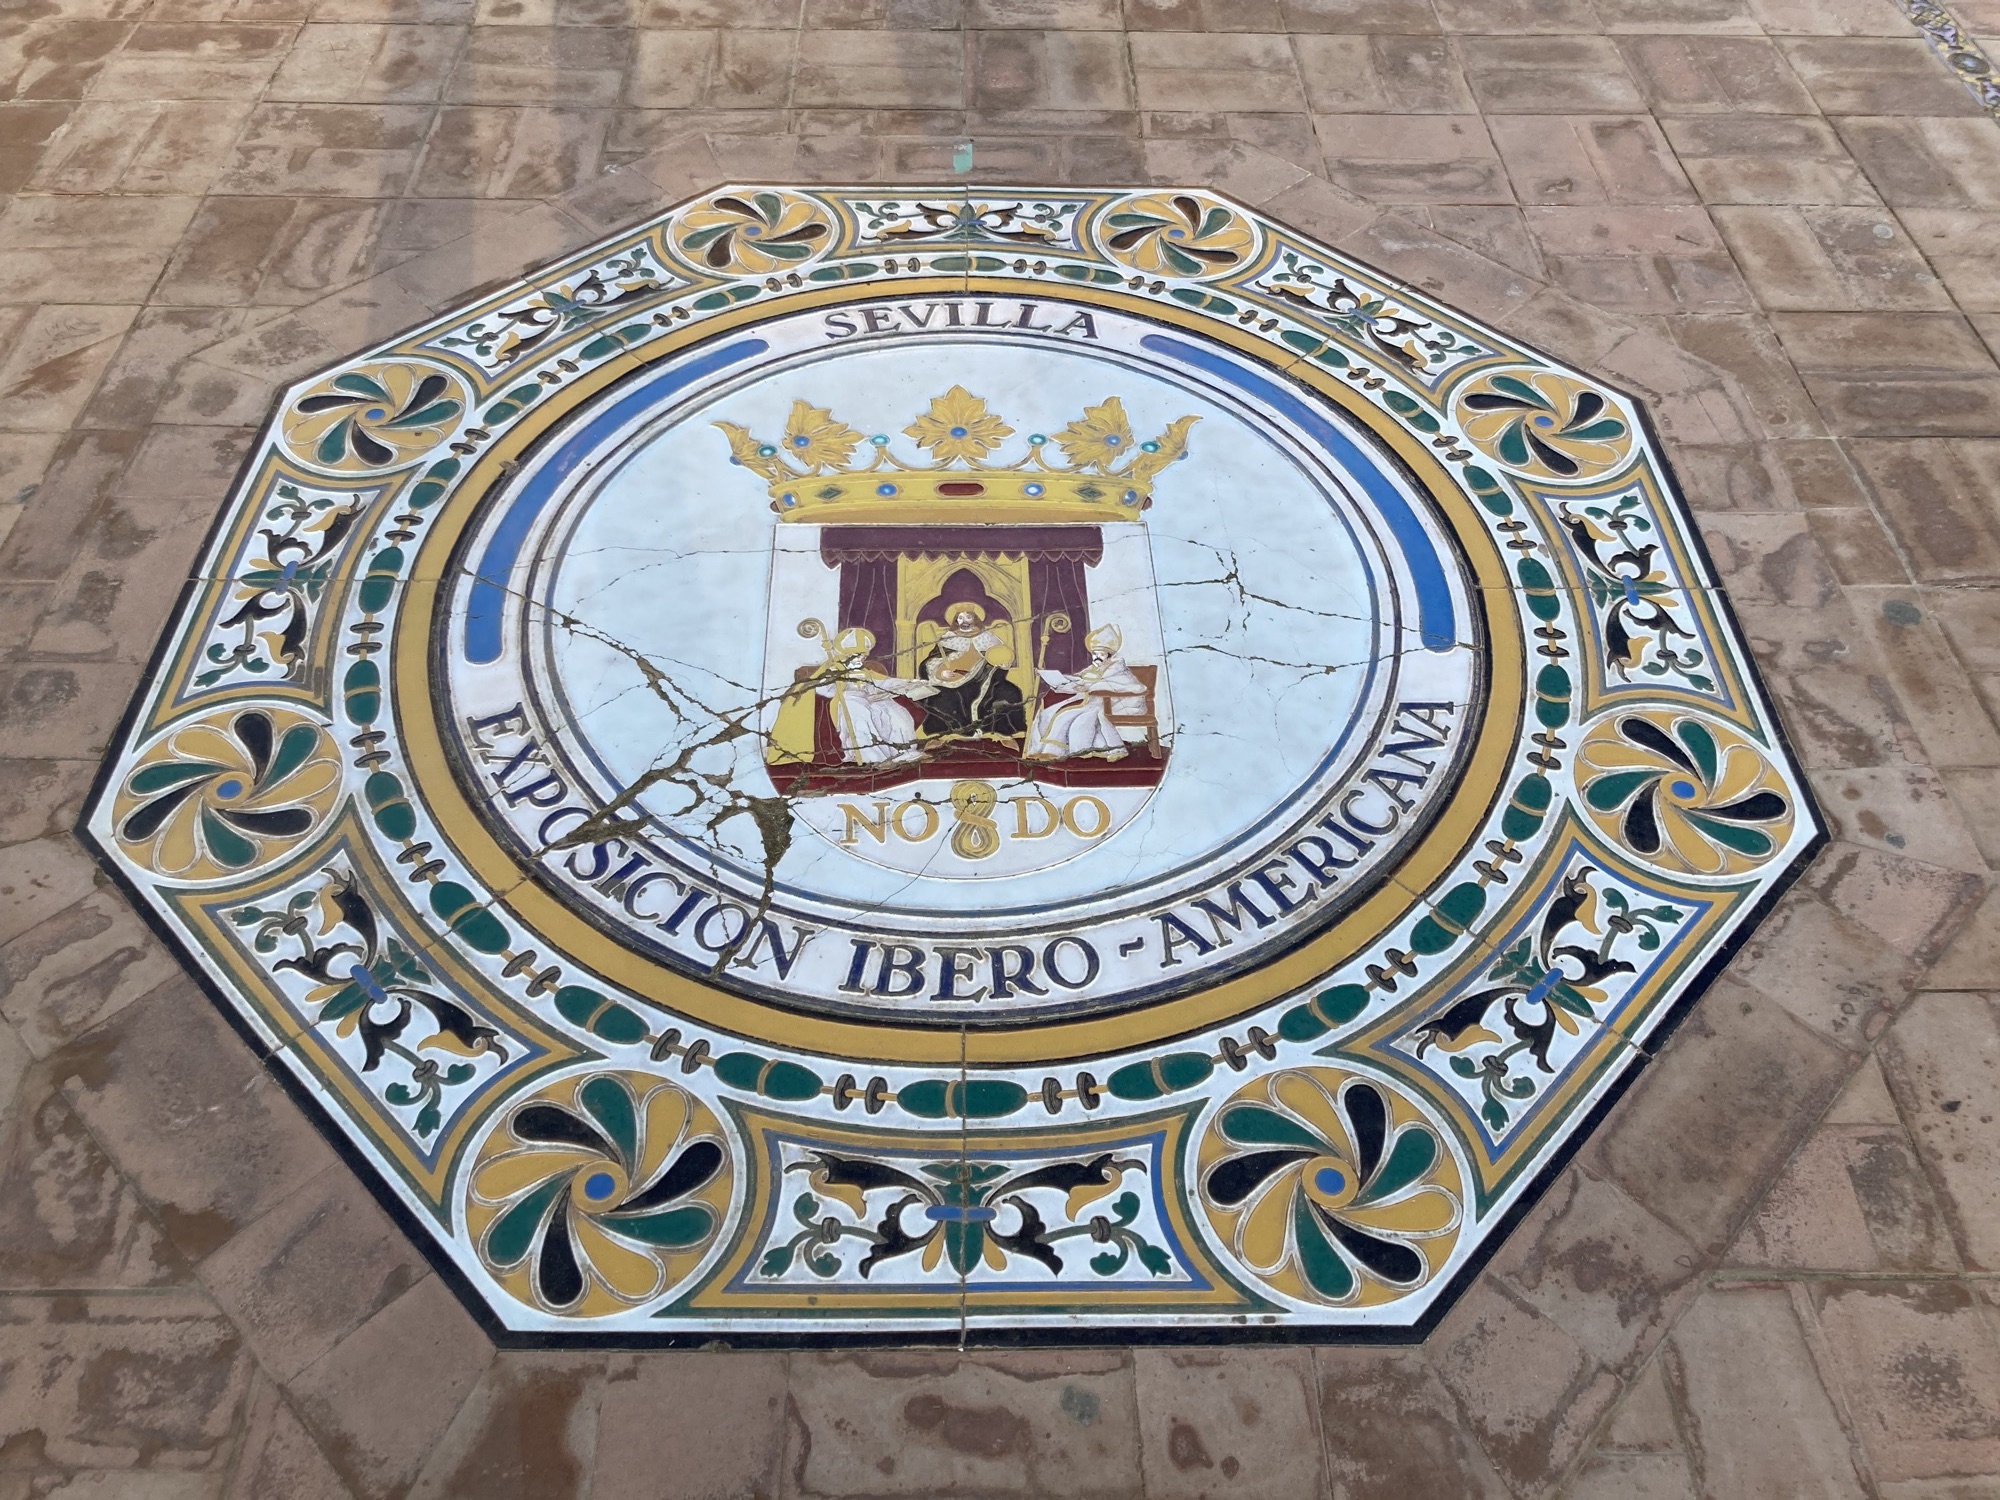 Detailaufnahme eines Mosaiks auf dem Boden, Form achteckig, in der Mitte das Stadtwappen von Sevilla mit dem Schriftzug NO DO, darunter der Text Exposicion Ibero-Americana, das Mosaik ist leicht beschädigt und von einigen Sprüngen durchzogen